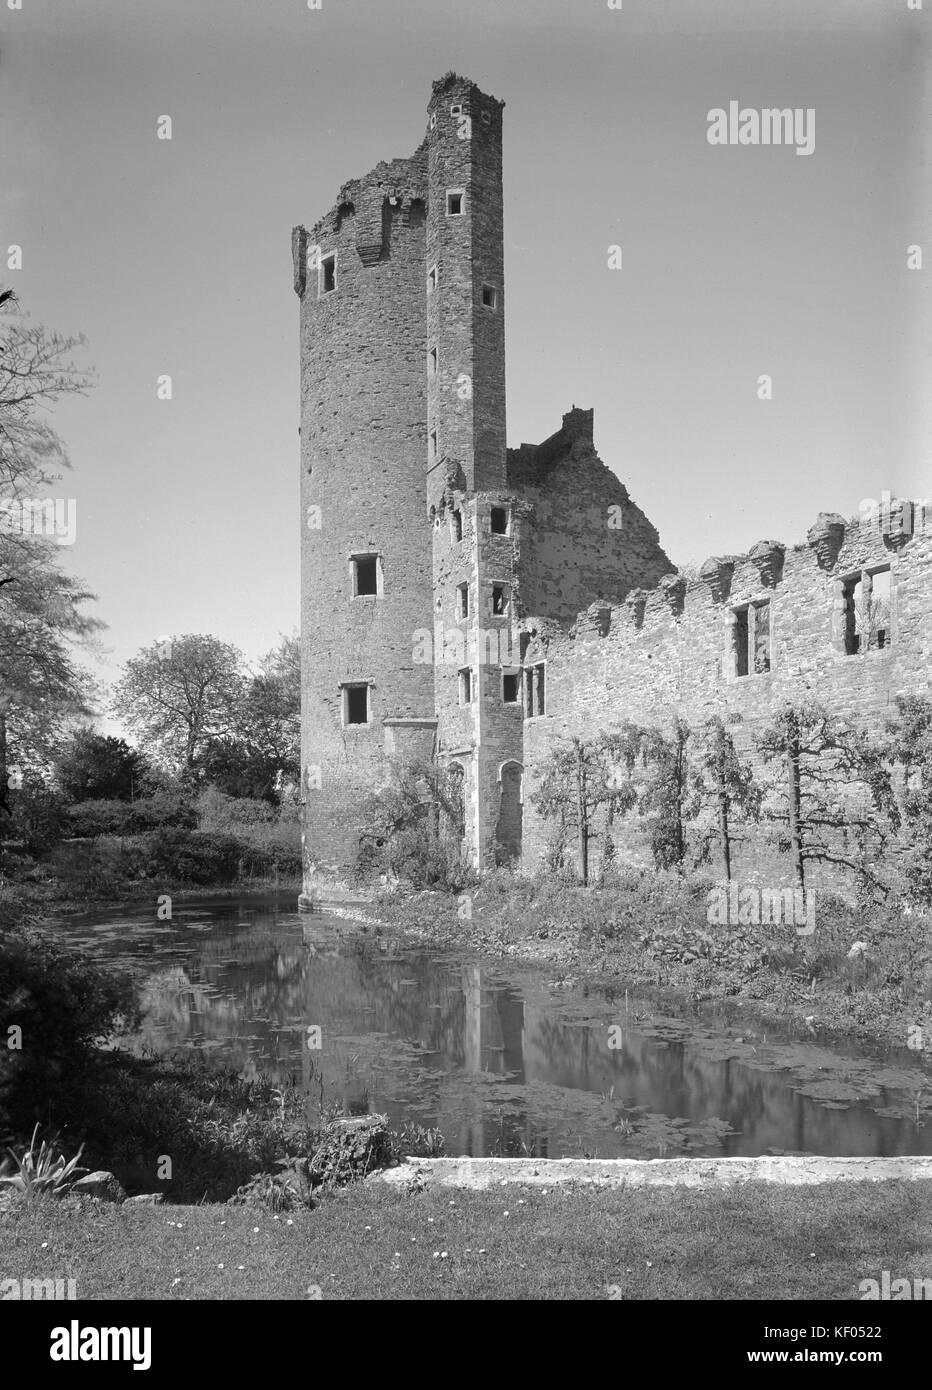 Caister Castle, à l'Ouest Caister, Norfolk. Une vue du sud montrant la tour sur le côté ouest de la ruine. Photographié en 1950 par Herbert Felton. Banque D'Images